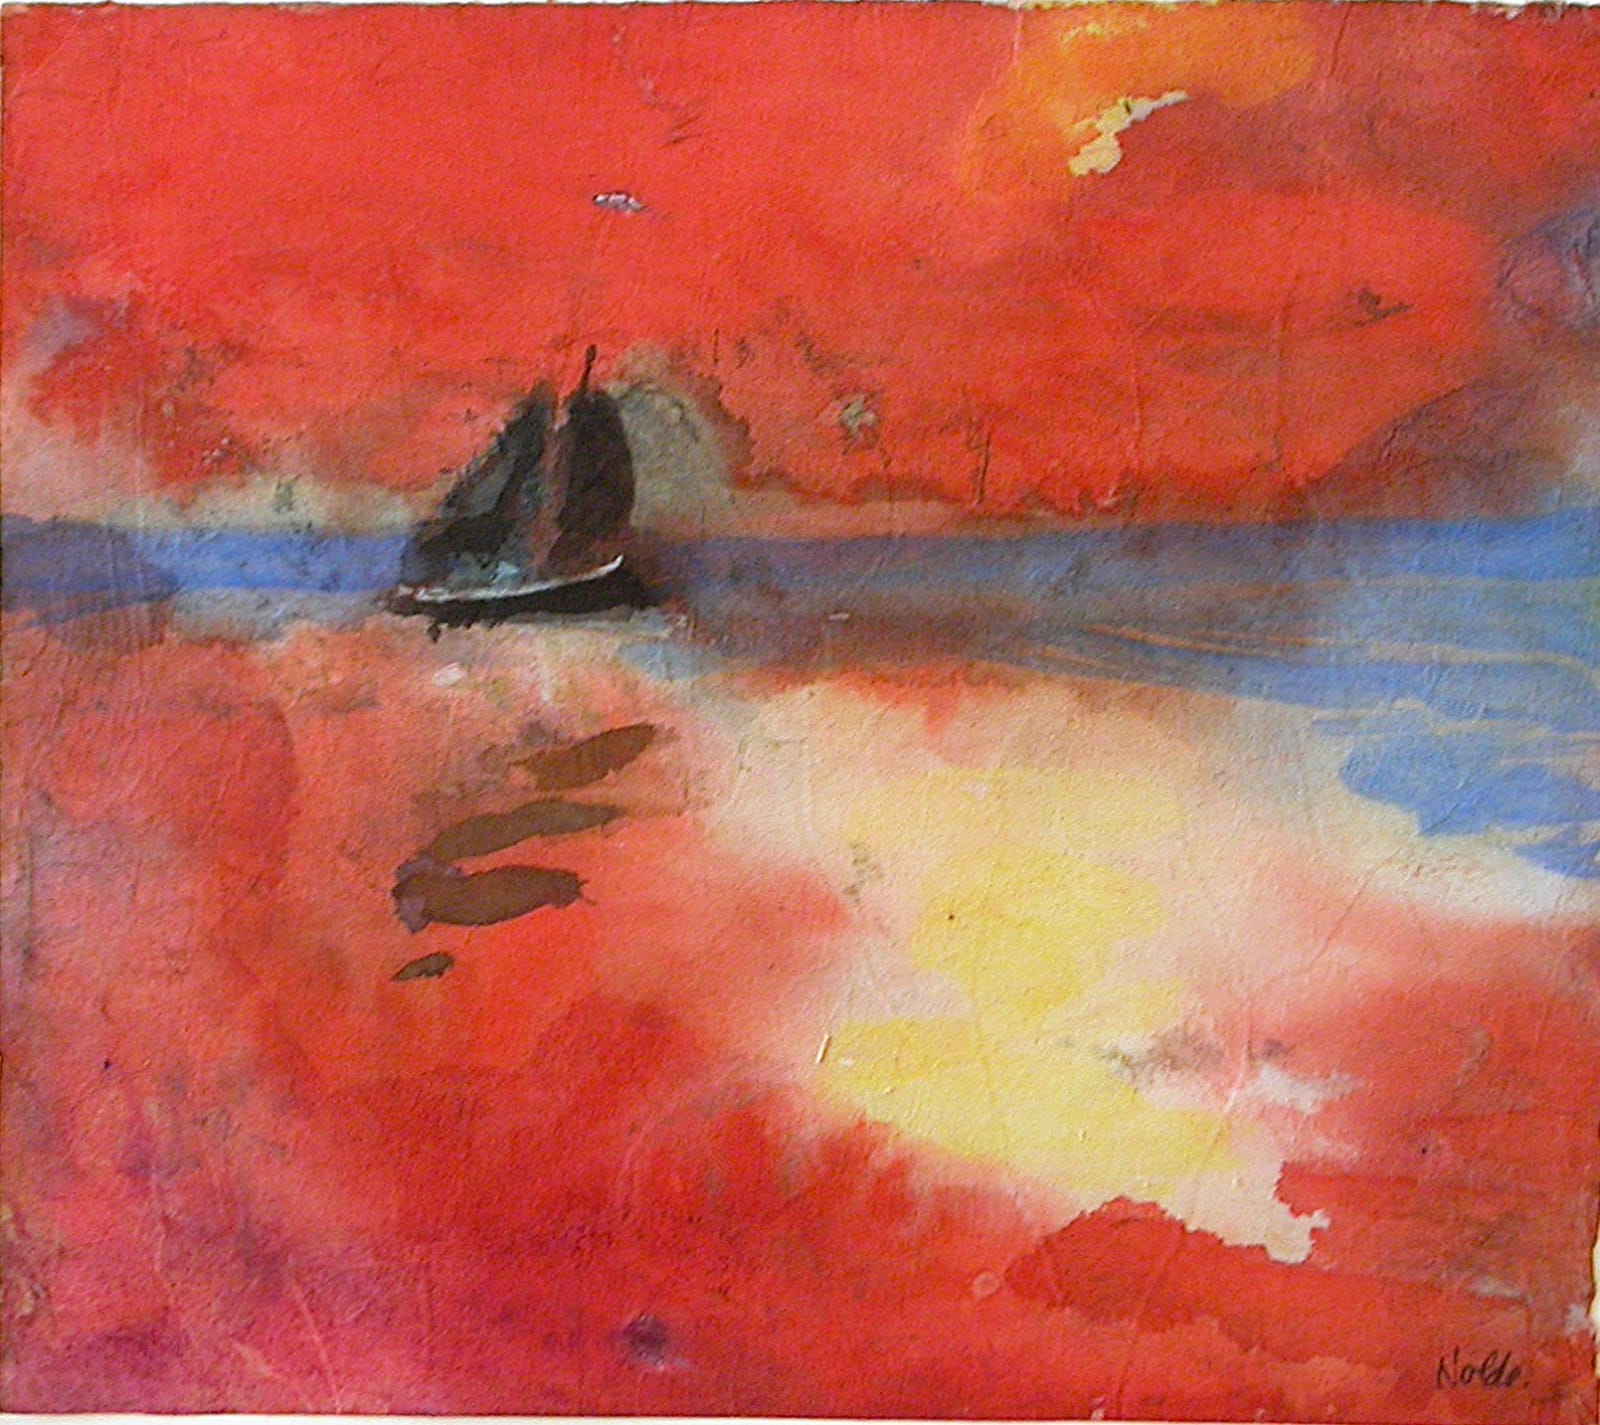 EMIL NOLDE, Segler auf rotem Meer, 1946 - 1947